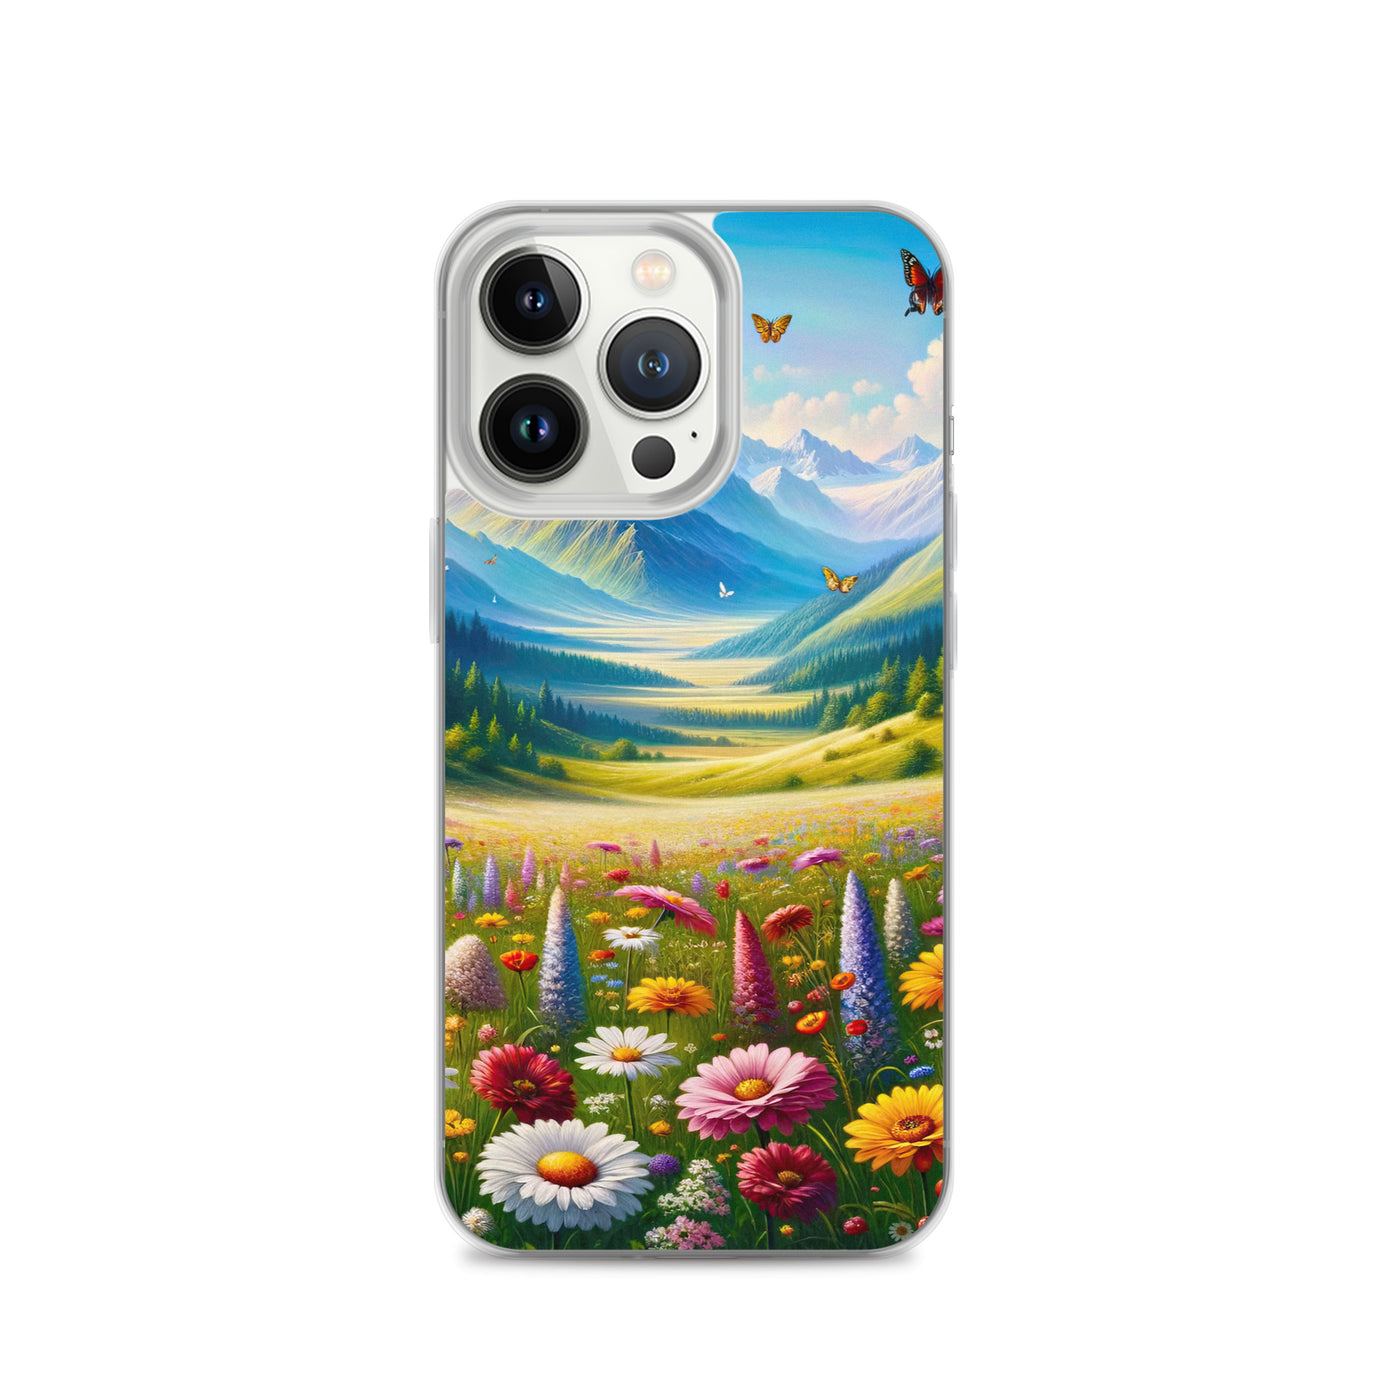 Ölgemälde einer ruhigen Almwiese, Oase mit bunter Wildblumenpracht - iPhone Schutzhülle (durchsichtig) camping xxx yyy zzz iPhone 13 Pro